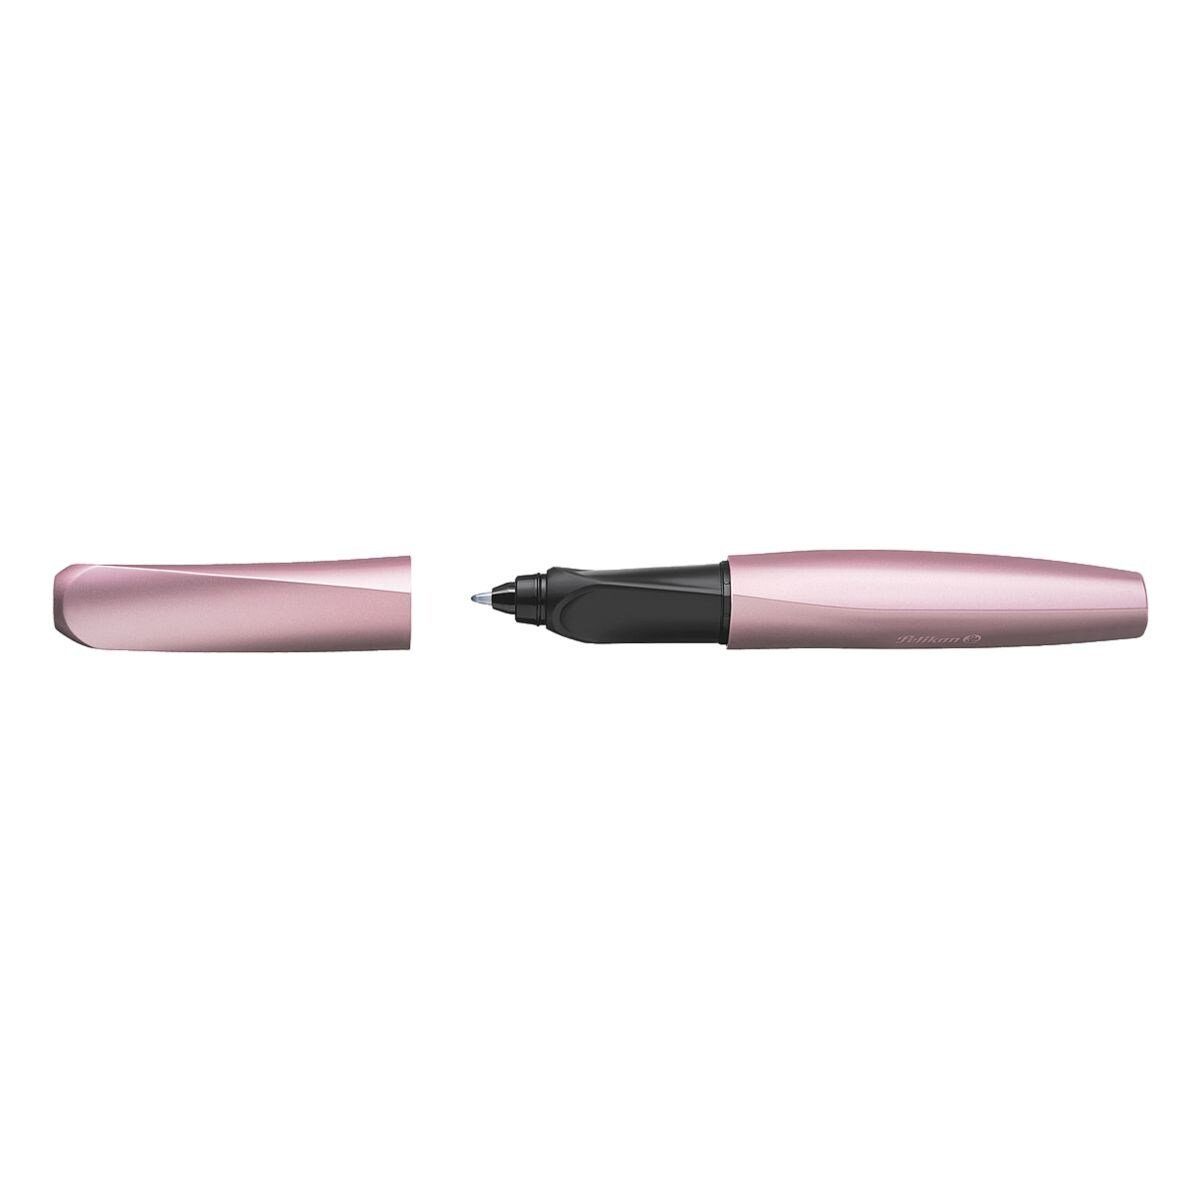 Pelikan Tintenroller Twist R457, für Rechts- und Linkshänder geeignet rosa